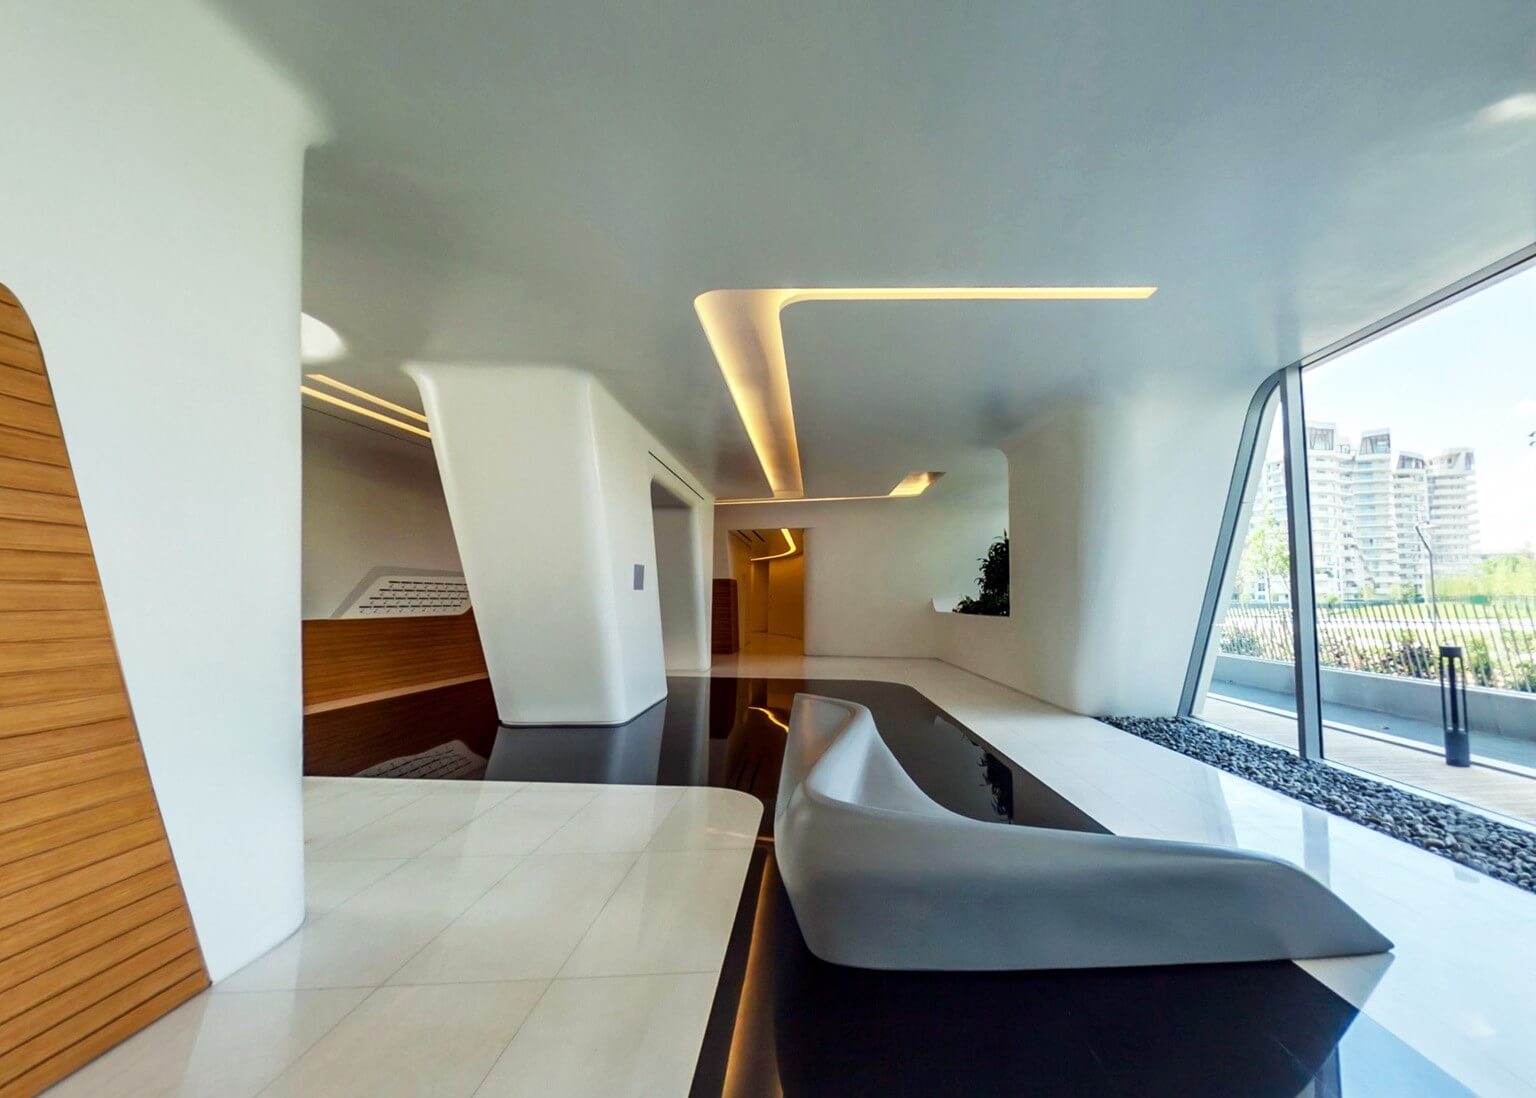 finitura interna lobby residenza Hadid City Life Milano in cartongesso e legno con velette per illuminazione e arredo